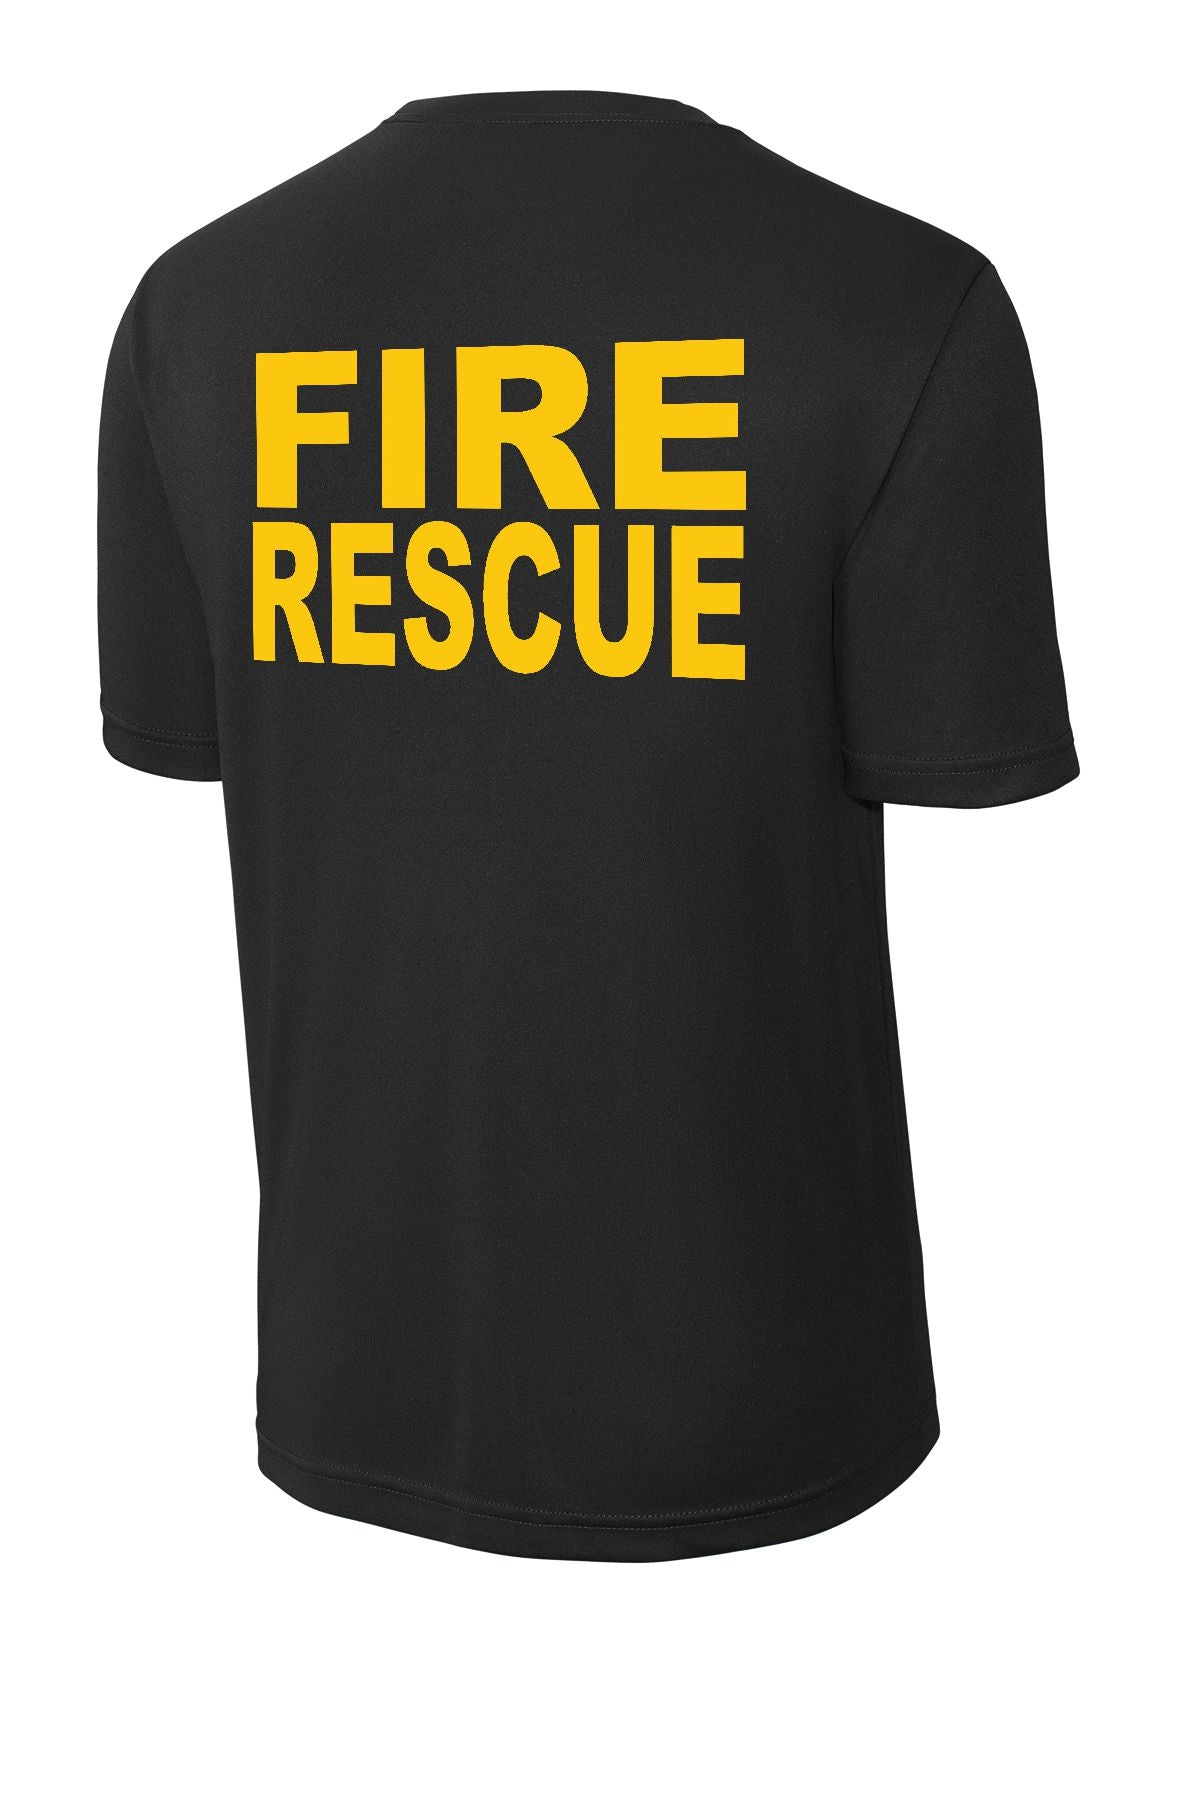 Atlas TWP Fire Department Performance T-shirt